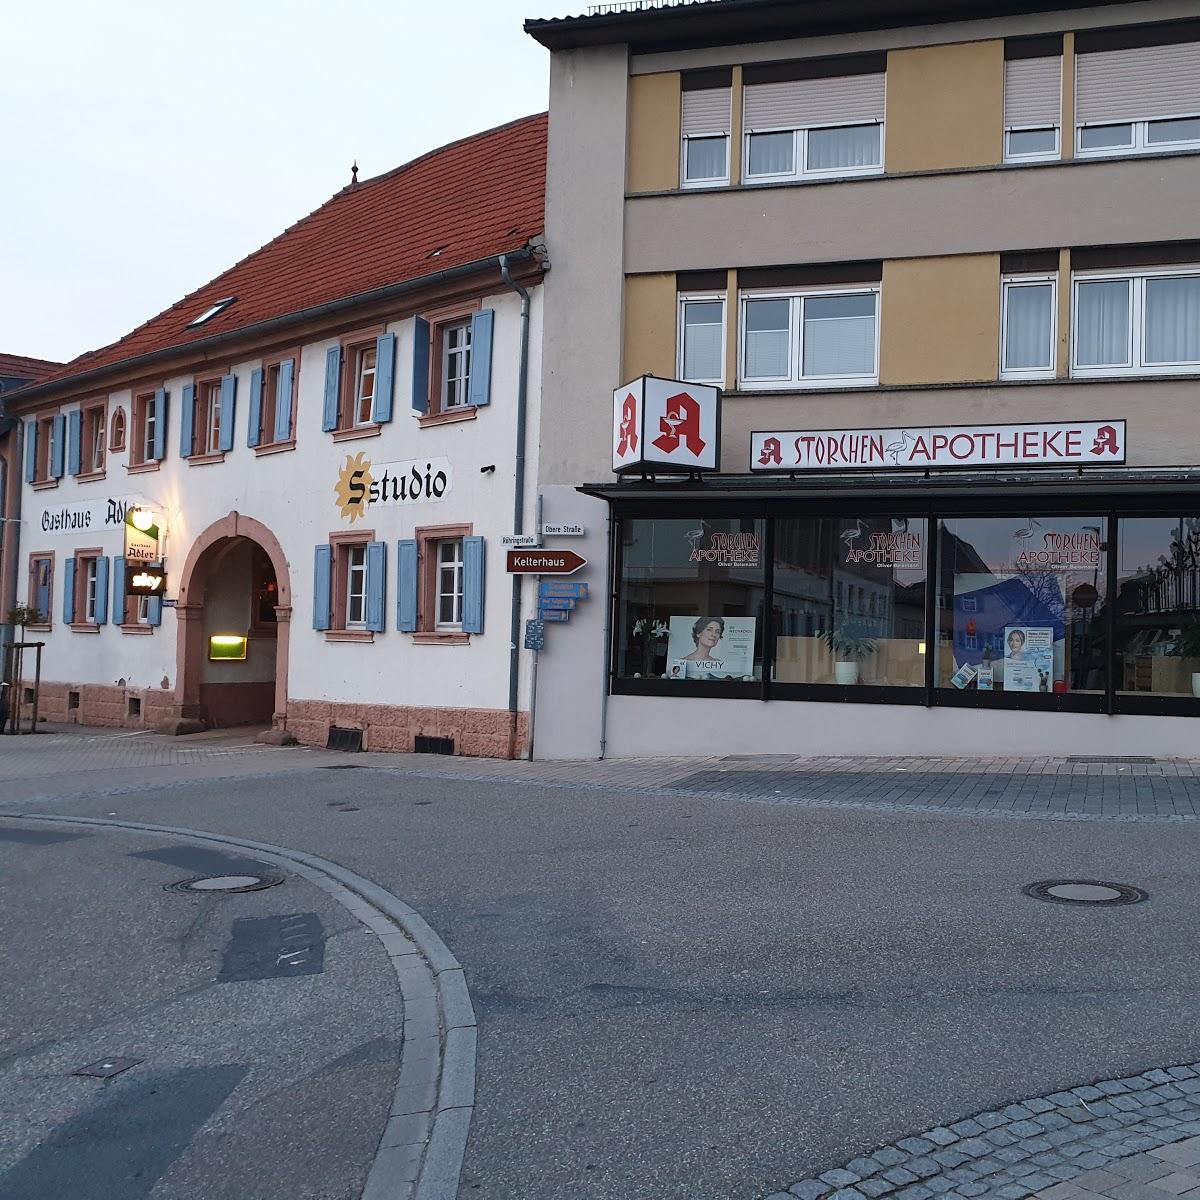 Restaurant "Gasthof Adler" in  Ubstadt-Weiher